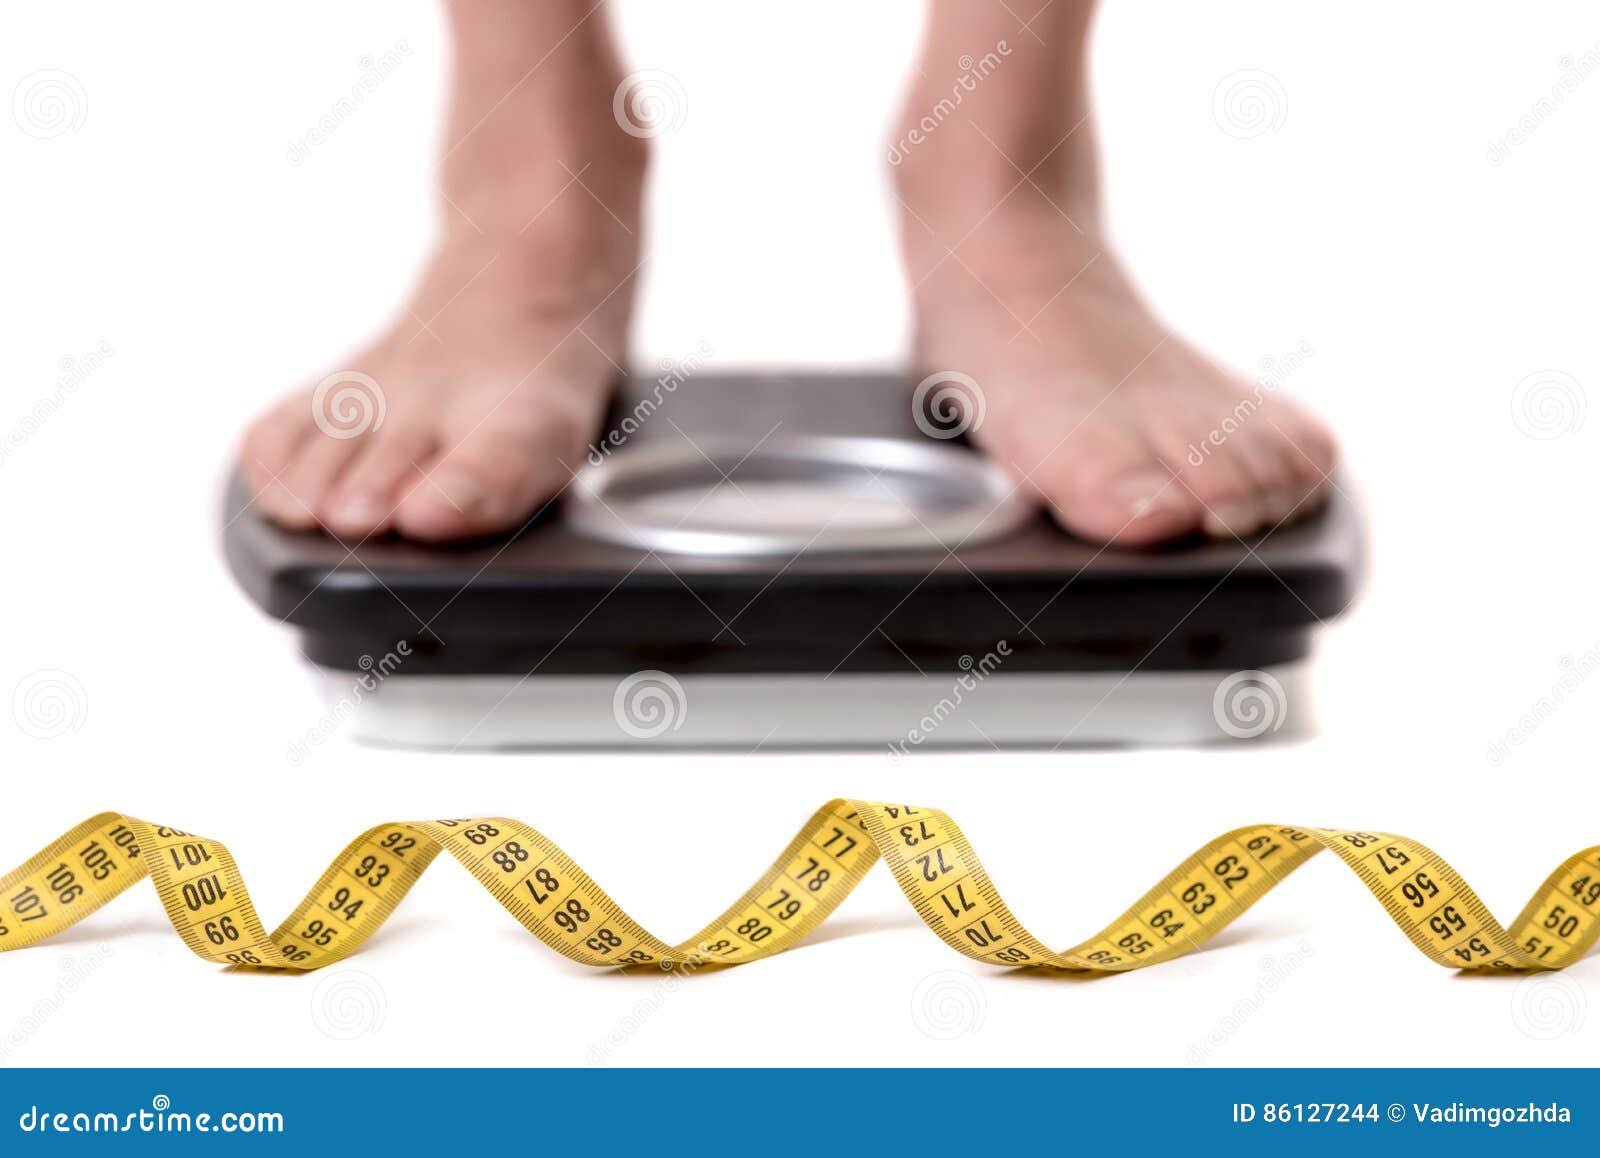 Мужчины весы после 40. Весы похудение. Подросток на весах. Взвешивается на весах. Потеря веса картинки.